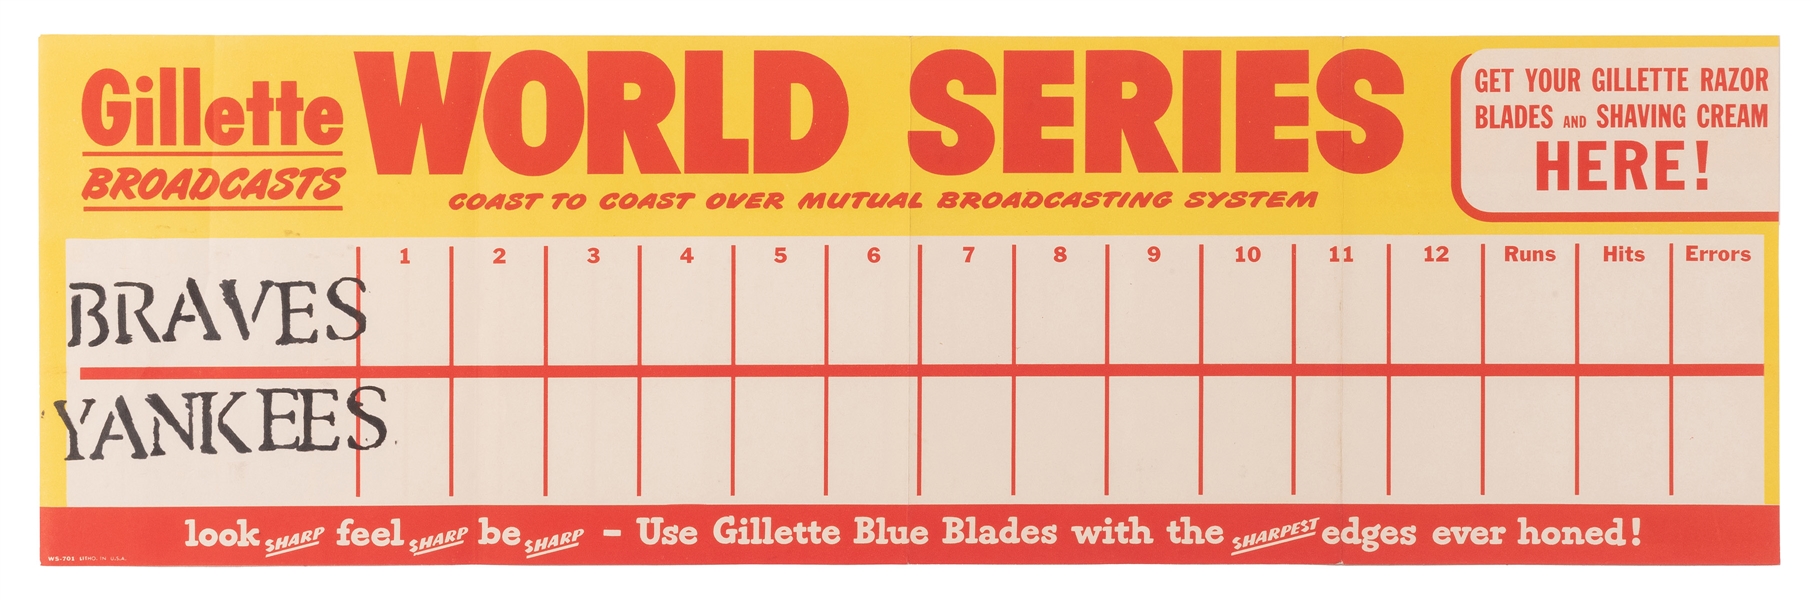  Yankees vs. Braves World Series Gillette Advertising Scoreb...